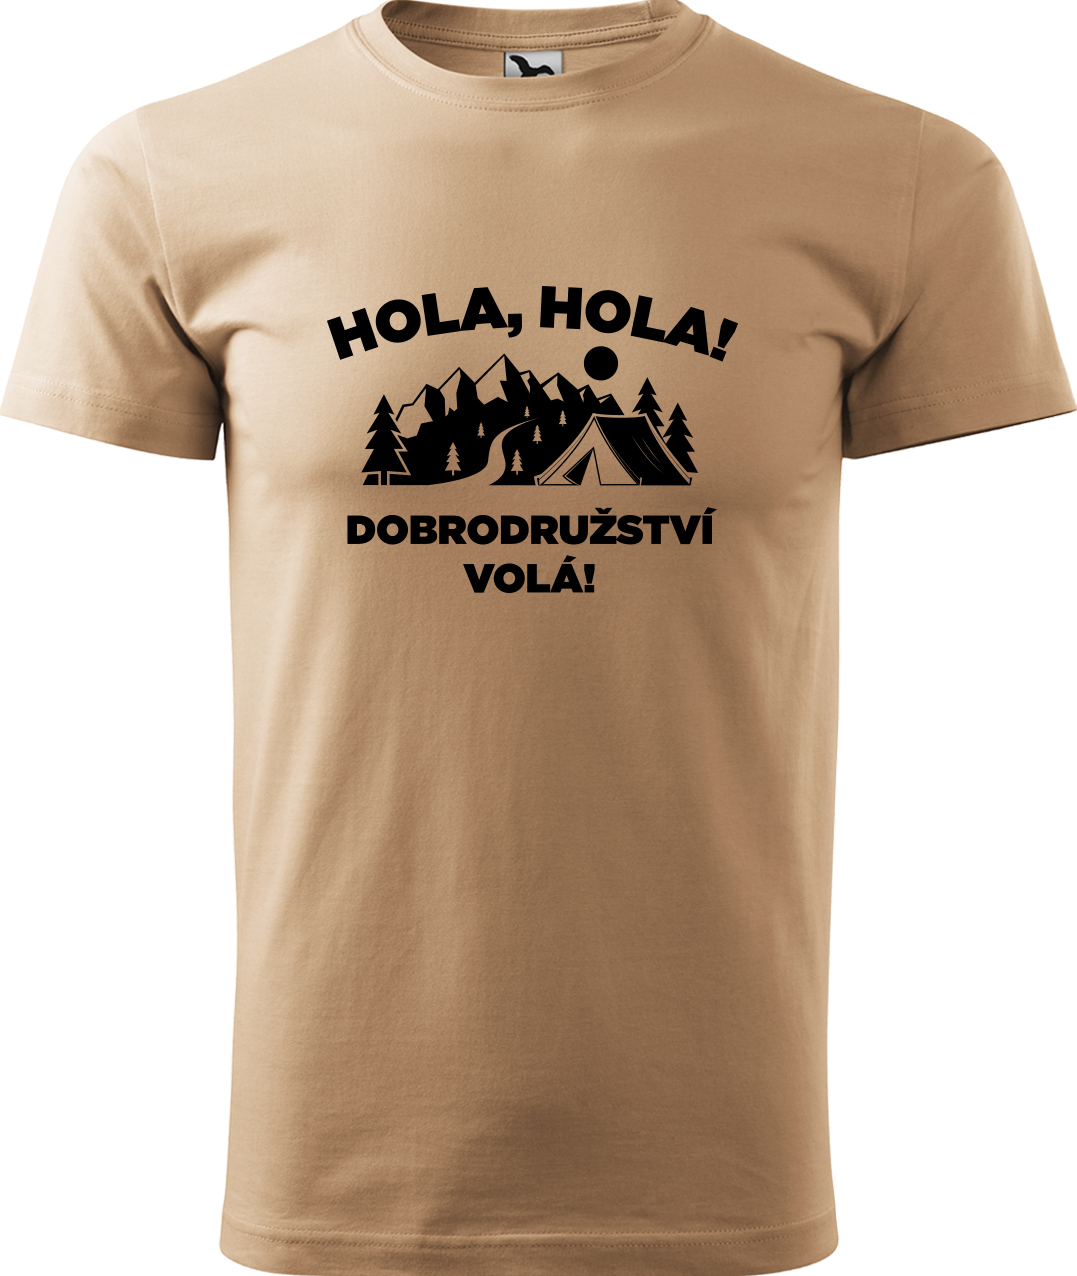 Pánské cestovatelské tričko - Hola hola! Dobrodružství volá! Velikost: S, Barva: Písková (08), Střih: pánský